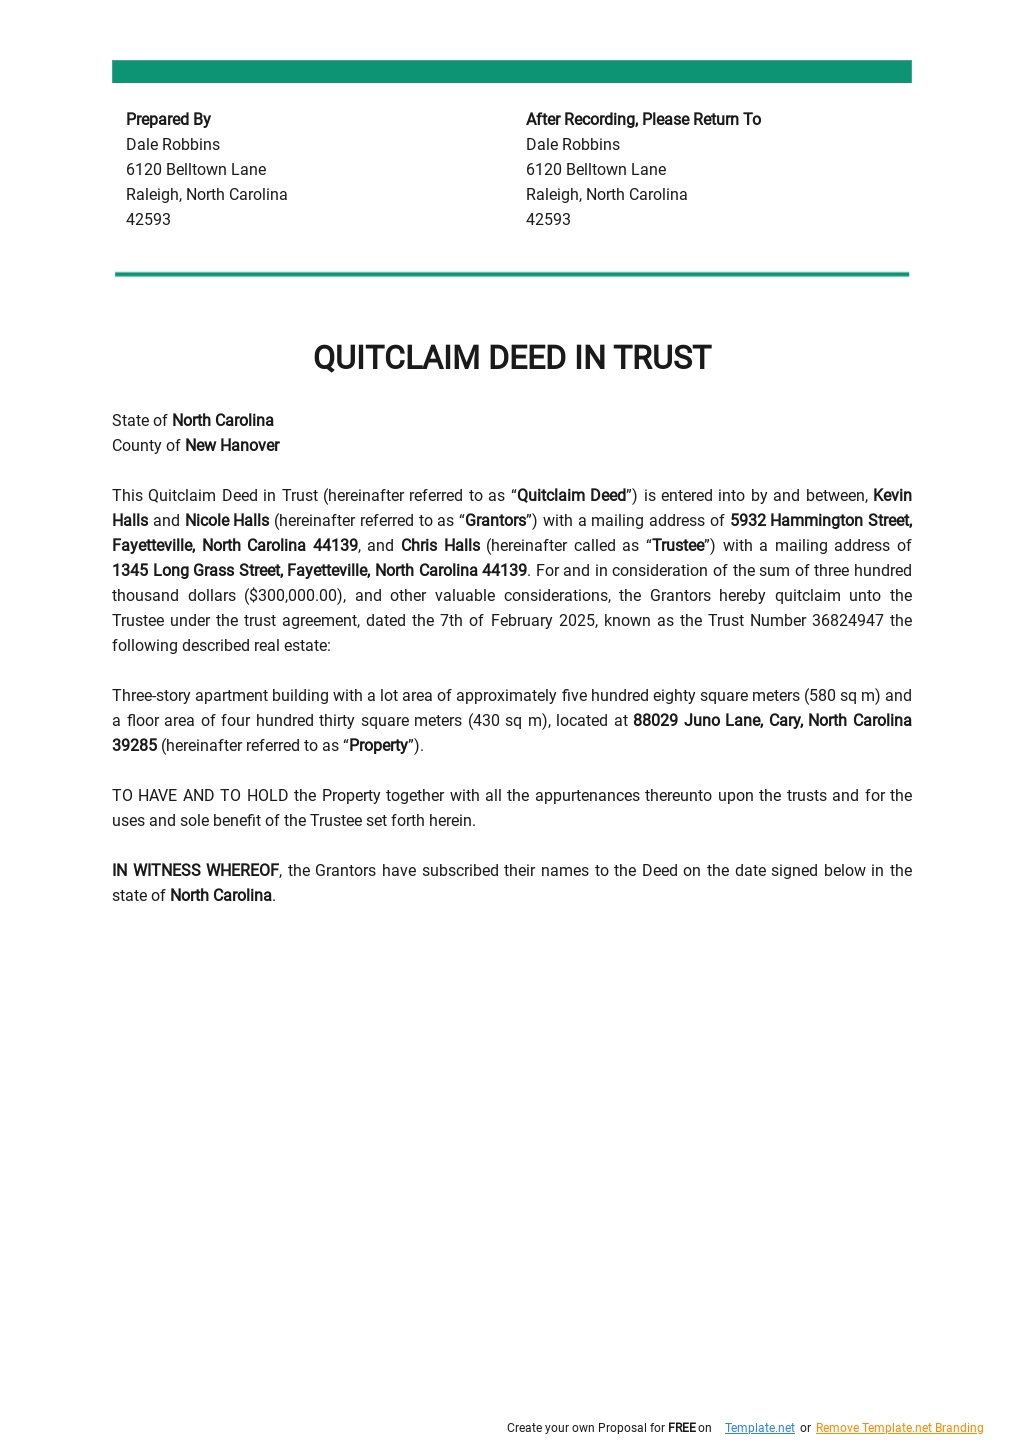 Quitclaim Deed in Trust Template